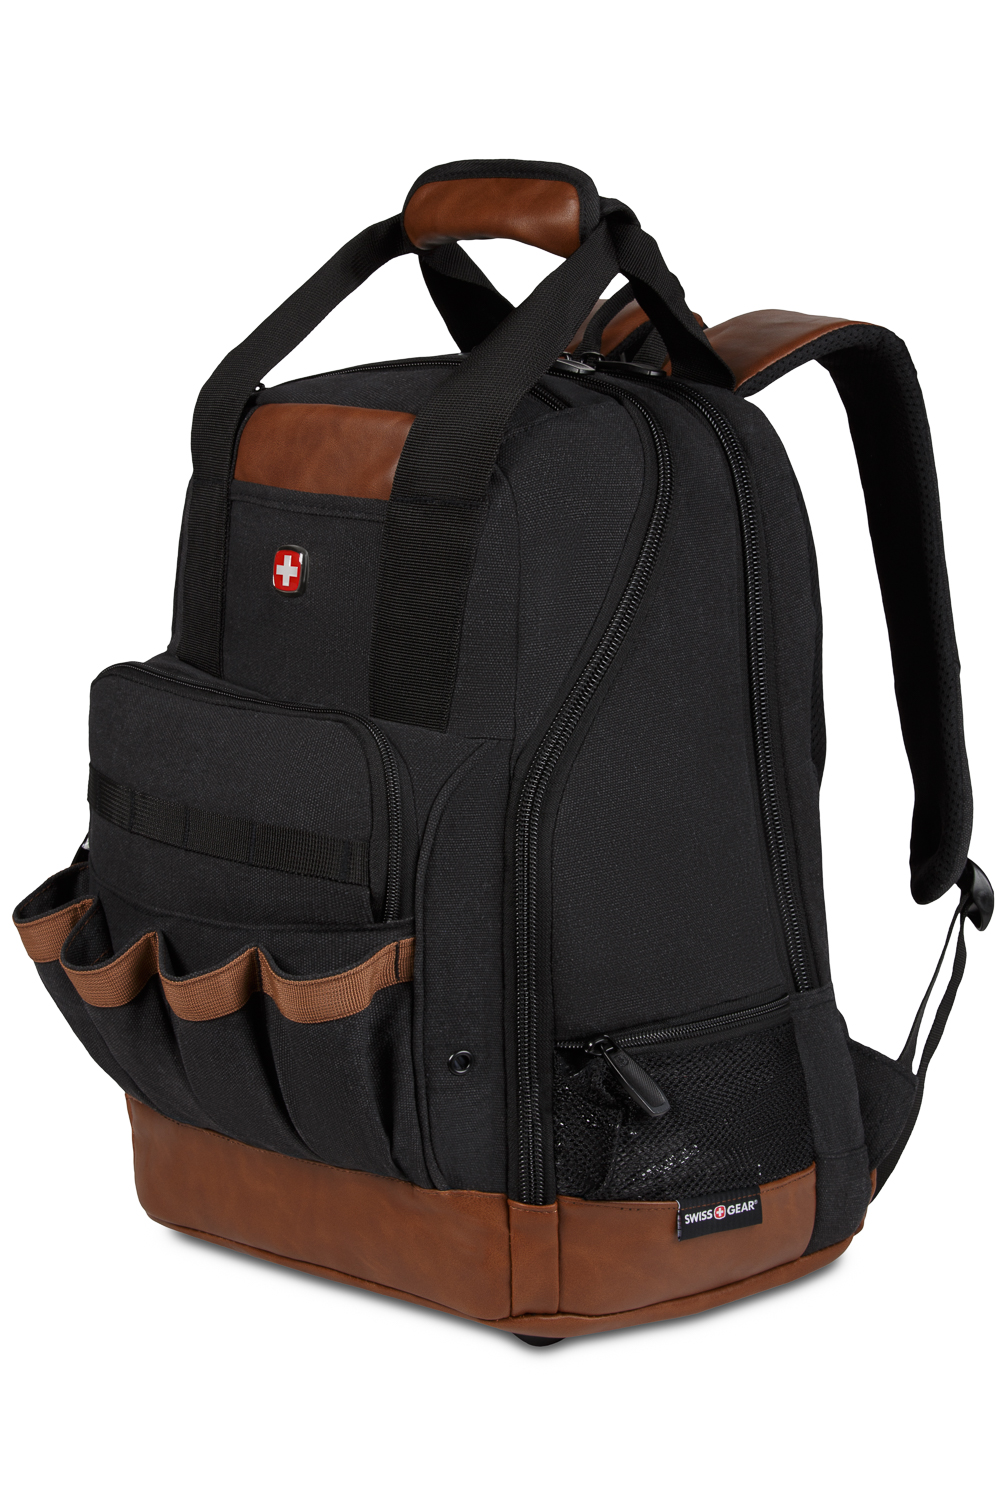 Swissgear 2767 Work Pack Tool Backpack - Canvas Black Brown, ___